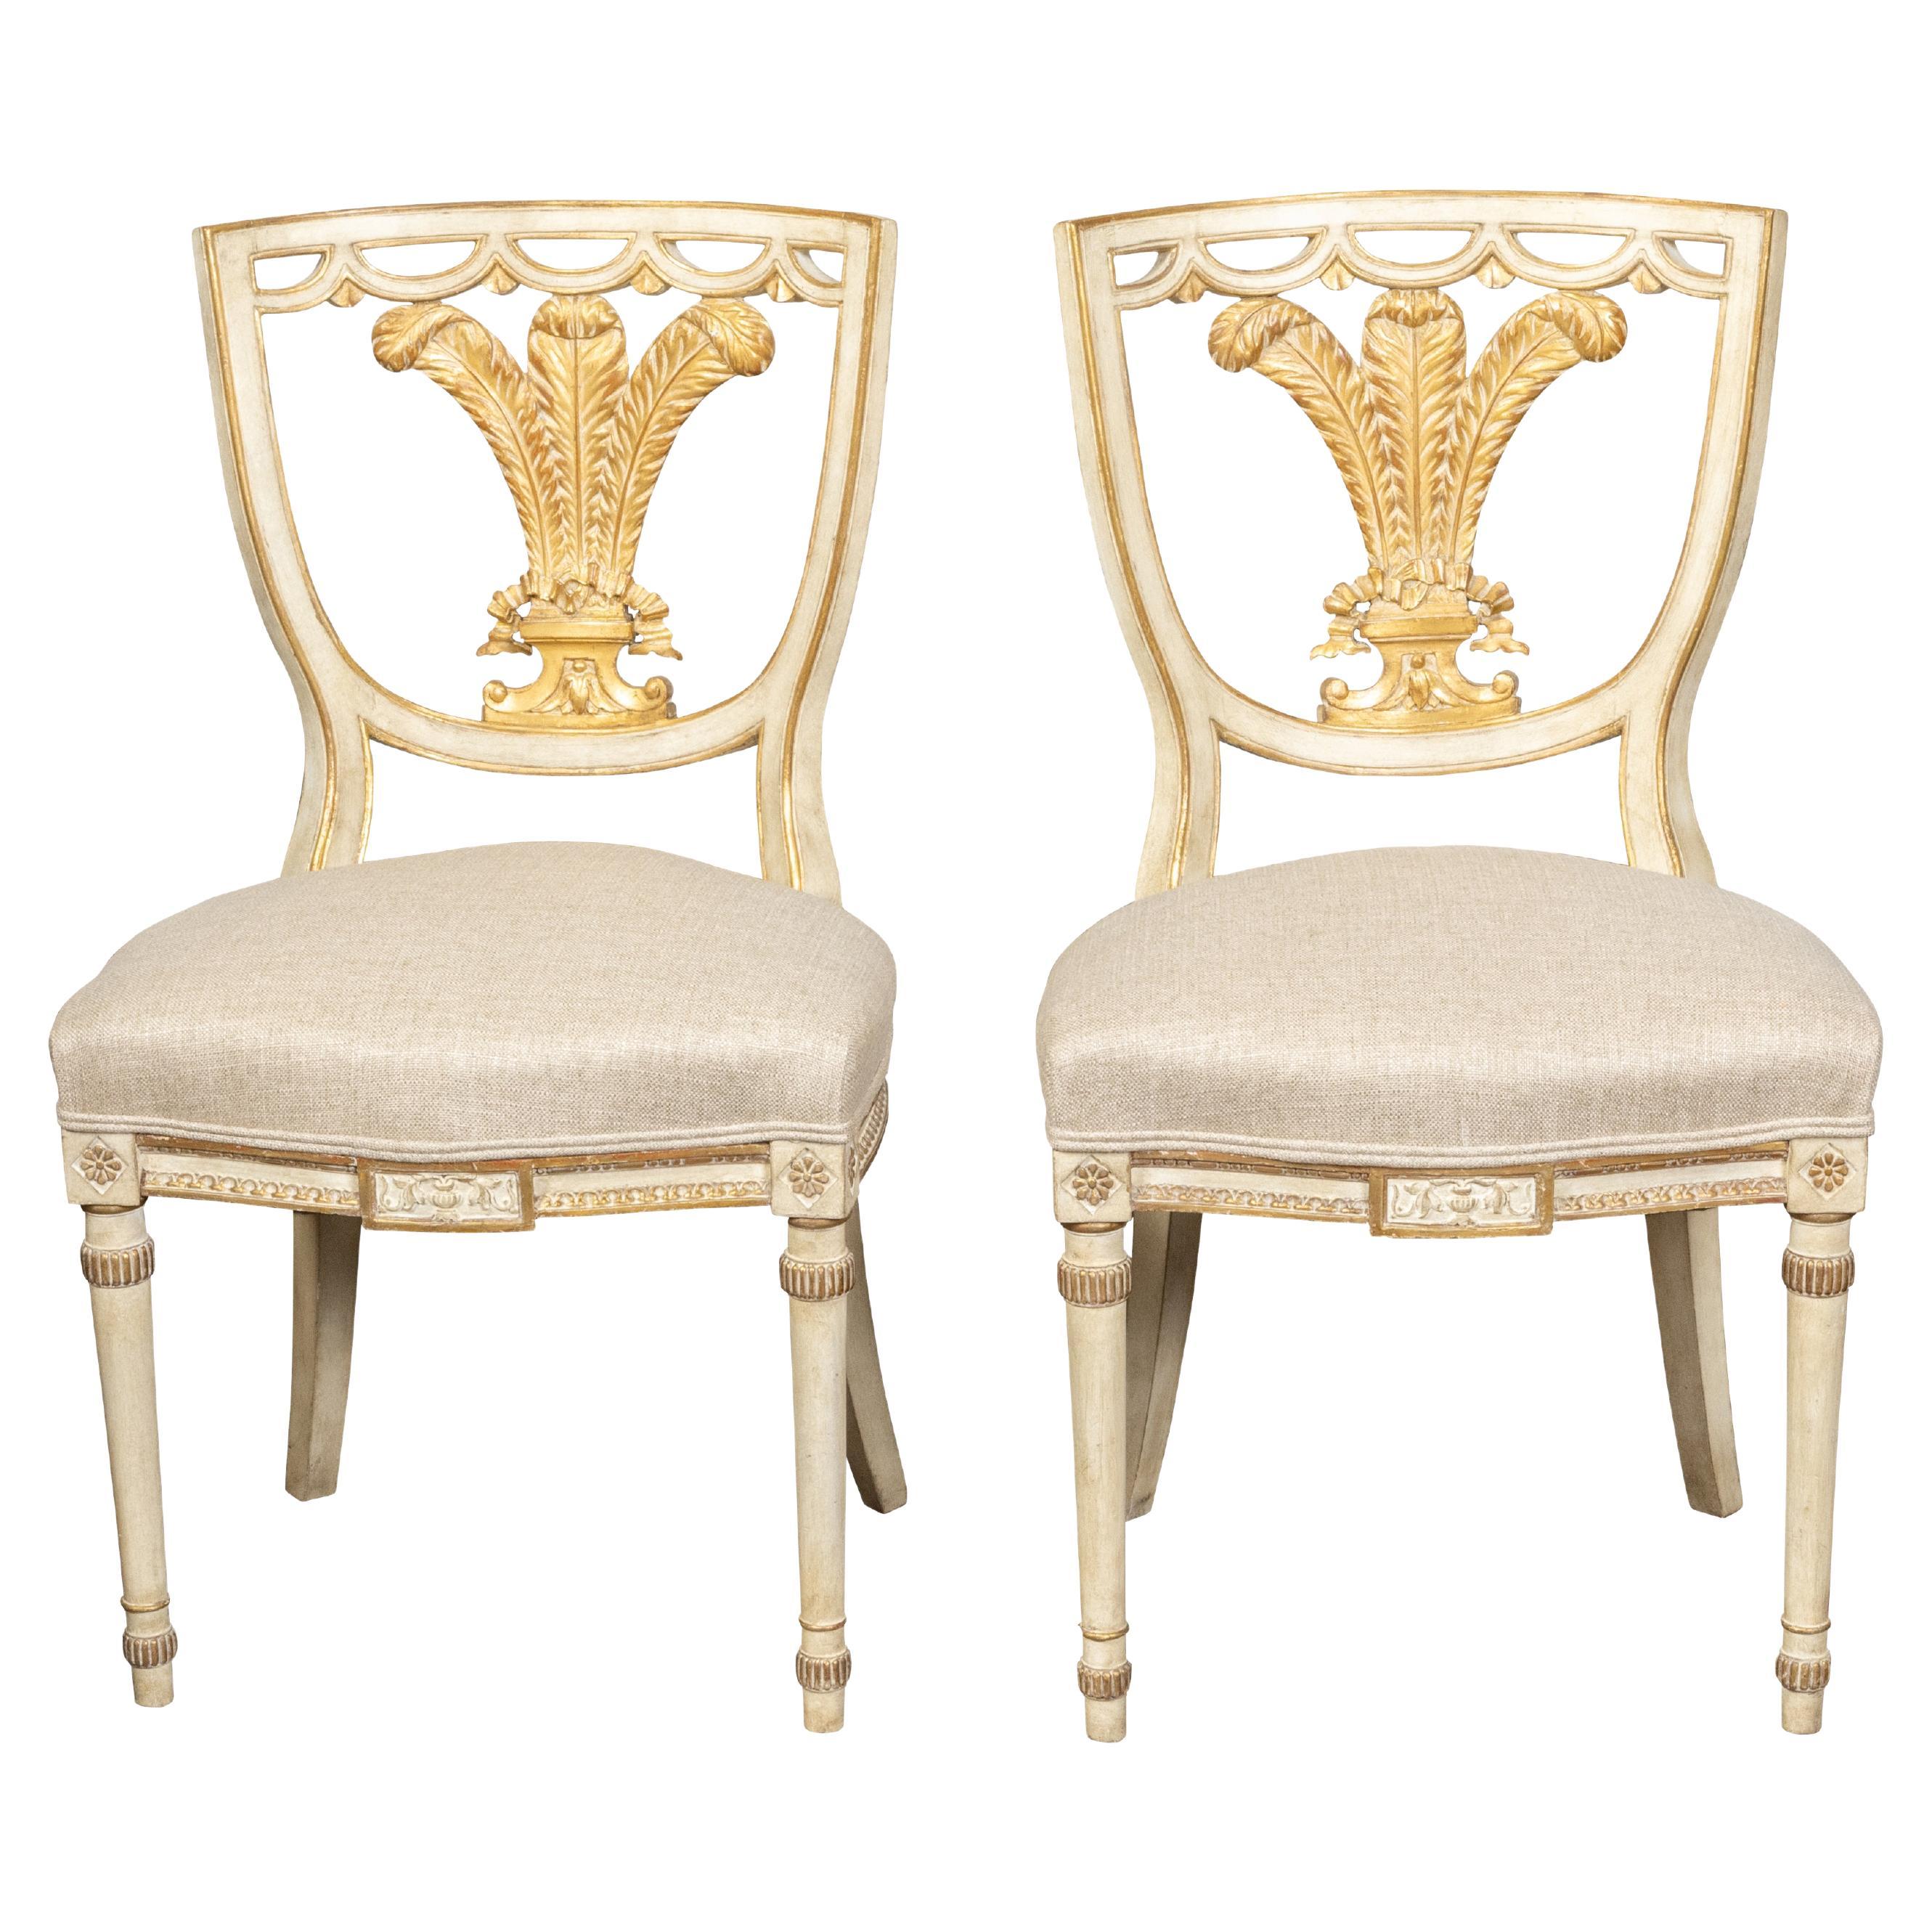 Paire de chaises anglaises de style néoclassique des années 1900 peintes et dorées avec plumes